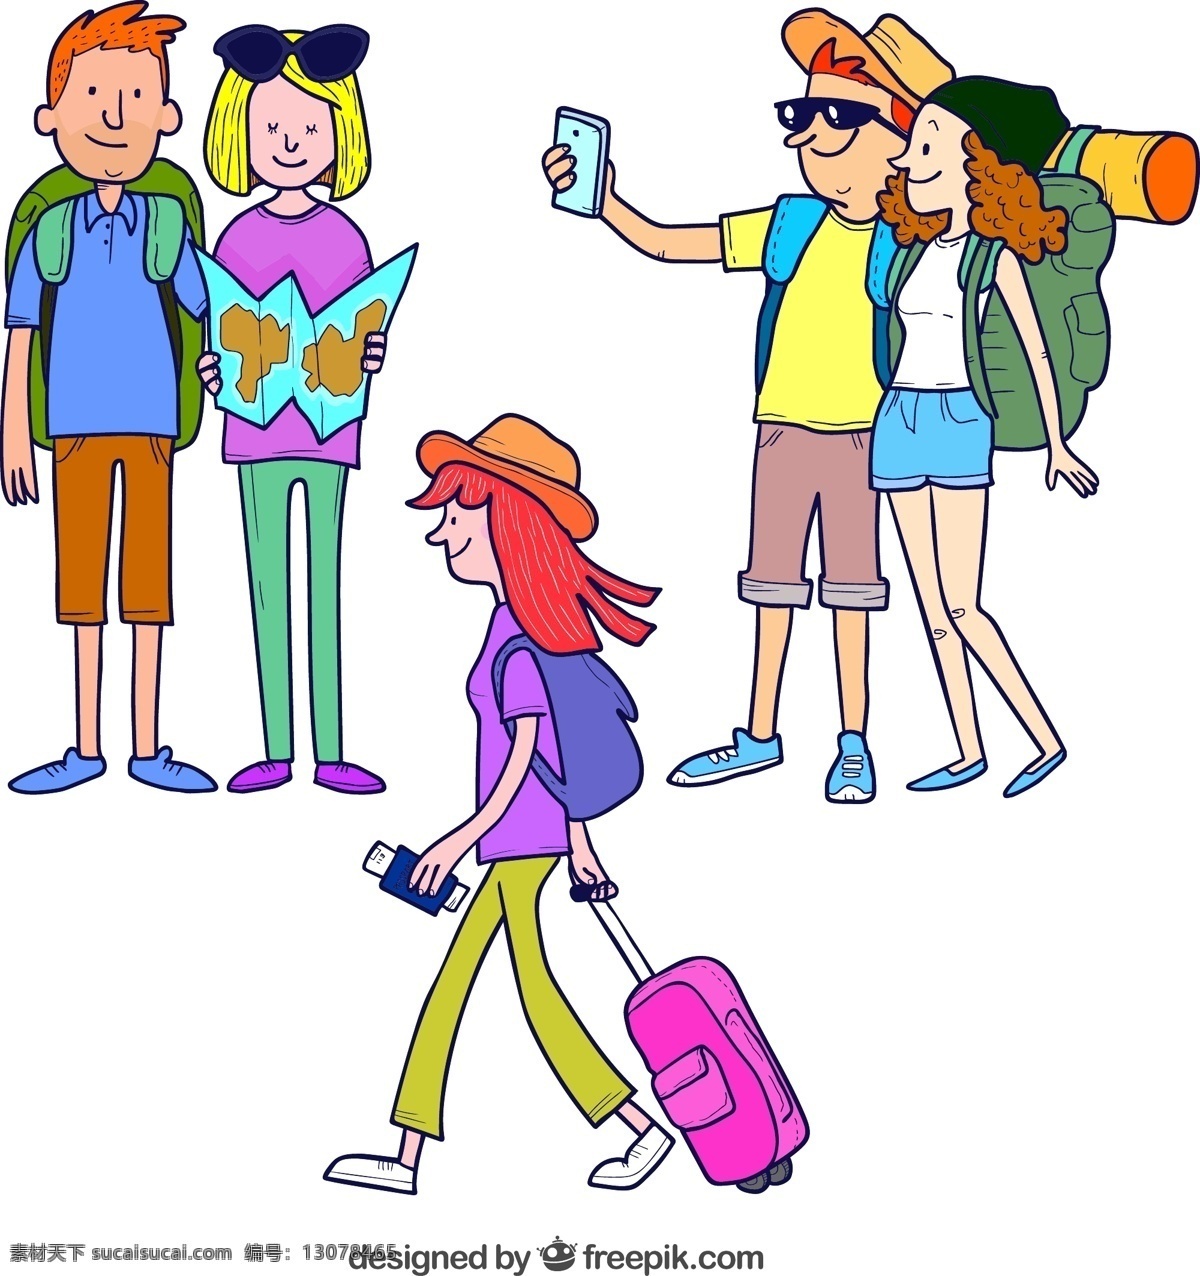 组 创意 旅行 人物 男子 女子 情侣 夫妇 背包 行李箱 手机 度假 动漫动画 动漫人物